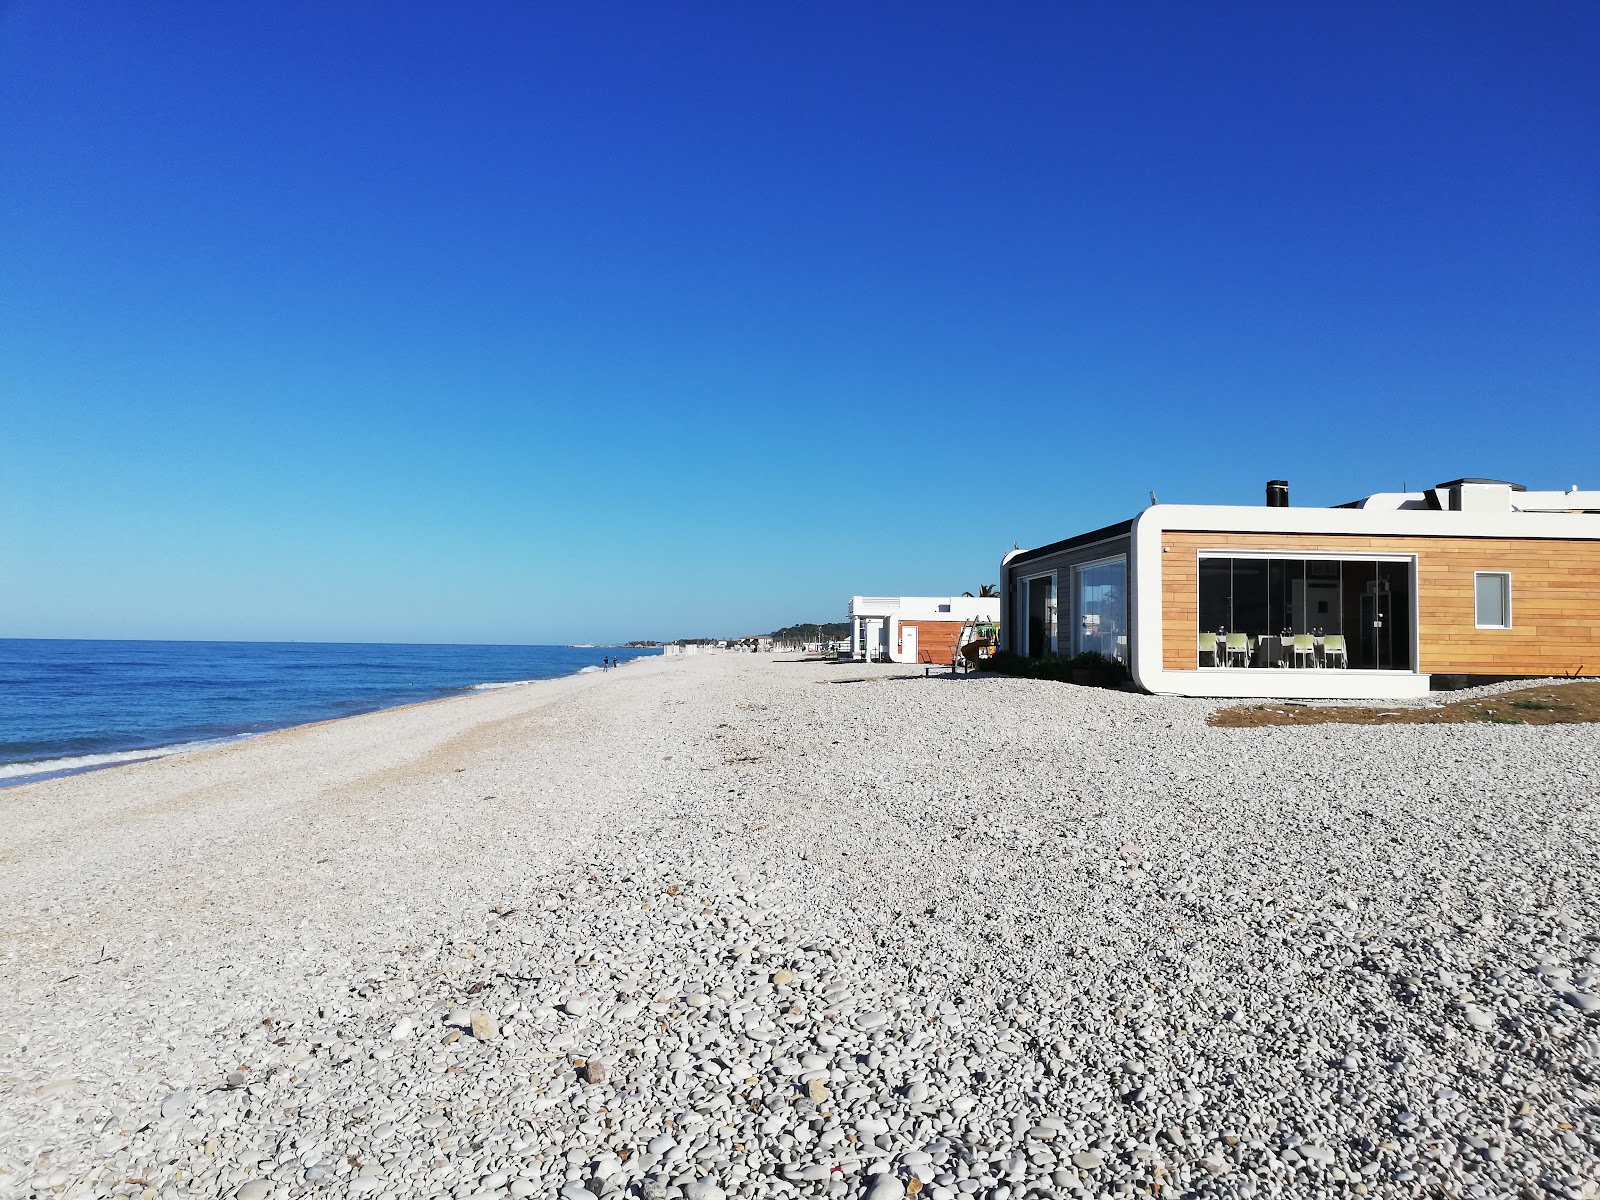 Spiaggia di Fossacesia Marina'in fotoğrafı - tatil için iyi evcil hayvan dostu nokta